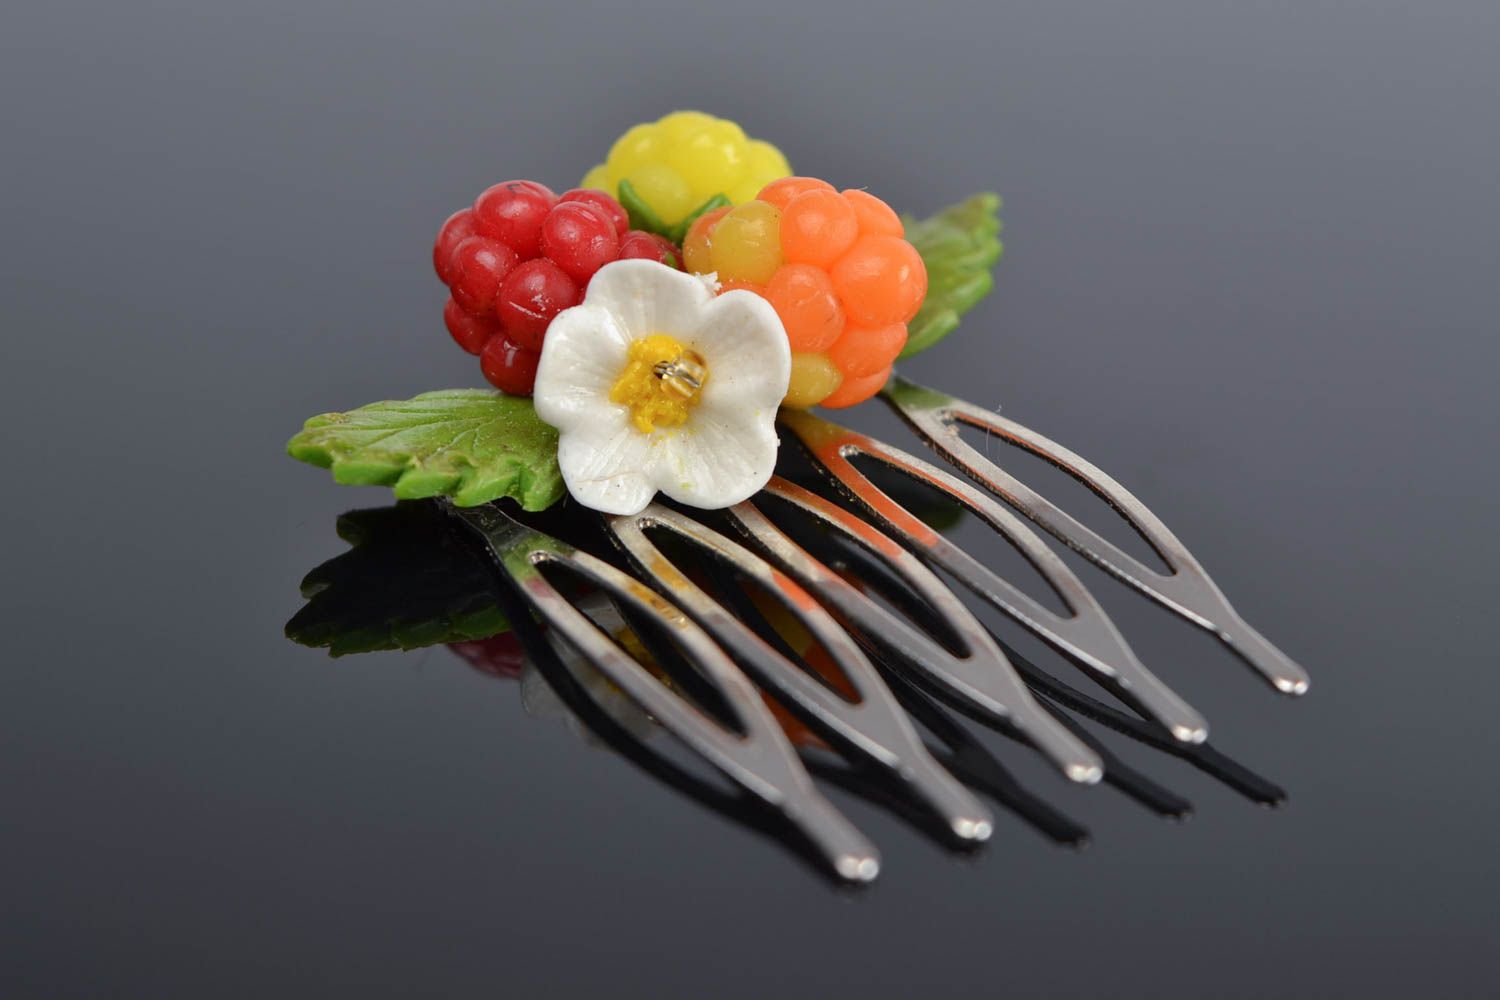 Metall Haarkamm mit Blumen und Beeren aus Polymerton bunt klein nett Handarbeit foto 1